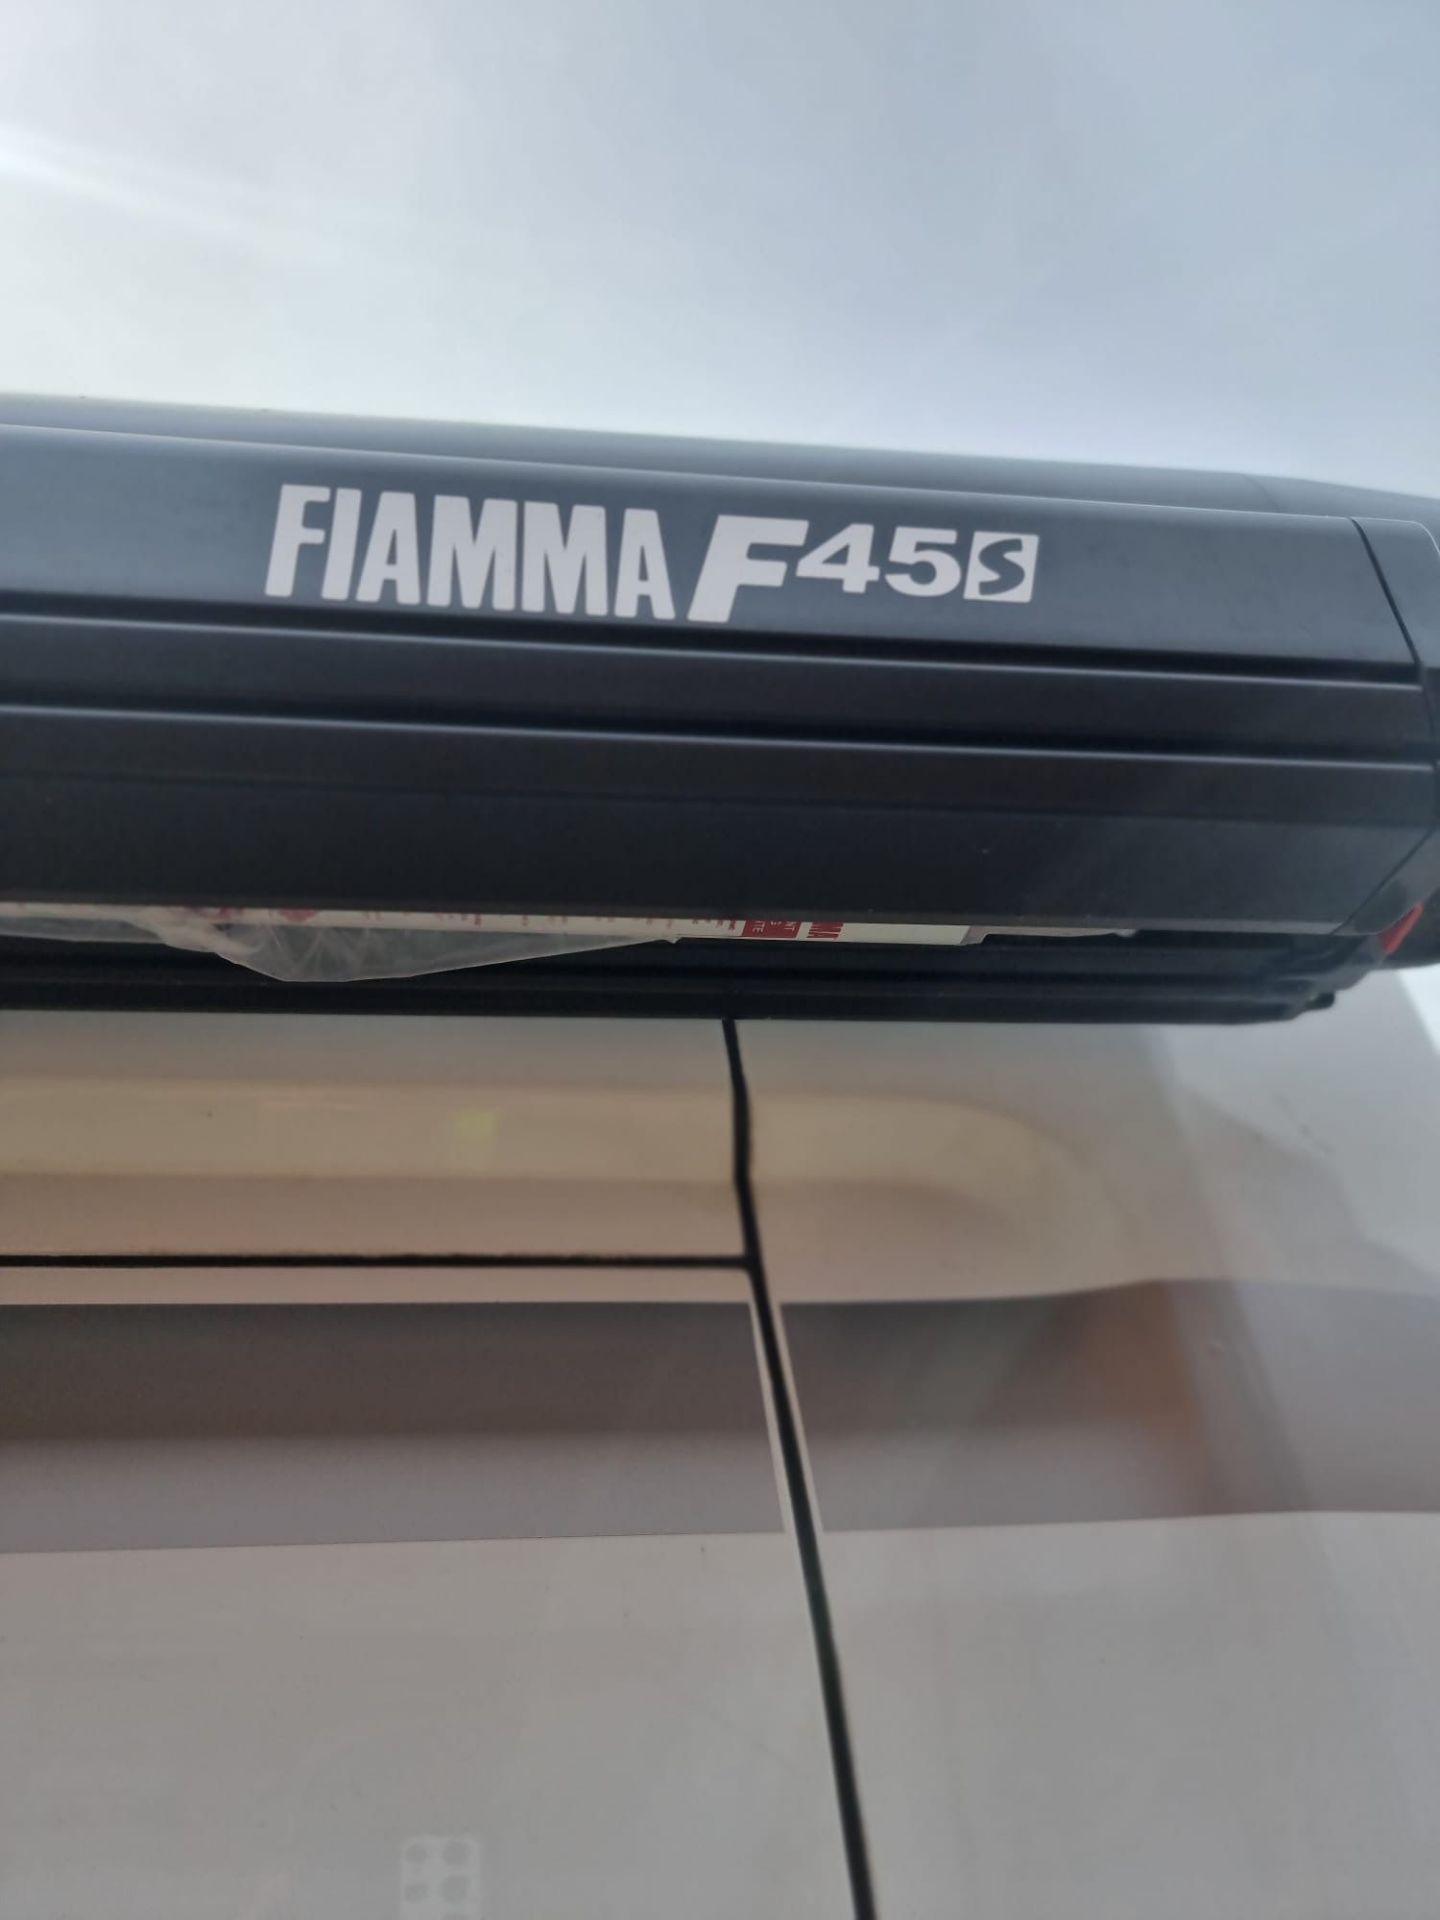 2019 Ford Transit 350 L2 Diesel FWD, 2.0 TDCi 130ps Camper Van Reg: YO19 HGL, DOR: July 2019, - Image 15 of 46